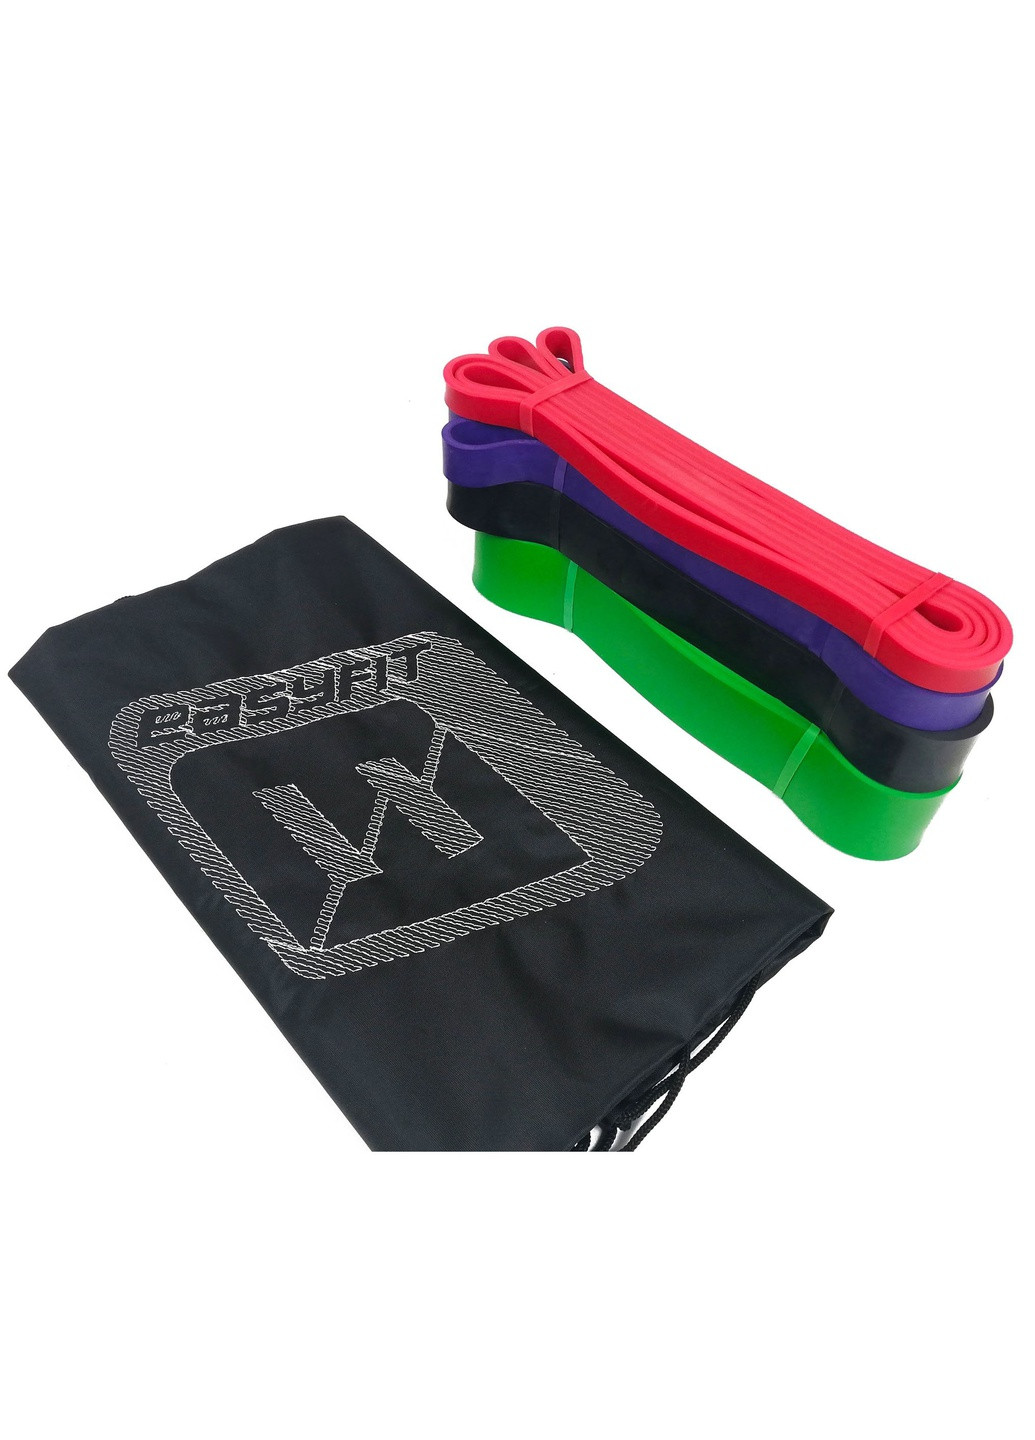 Резиновые петли 2-65 кг (набор из 4 шт для фитнеса, подтягиваний, резина тренировочная для турника, резинка-эспандер) EasyFit (241214920)